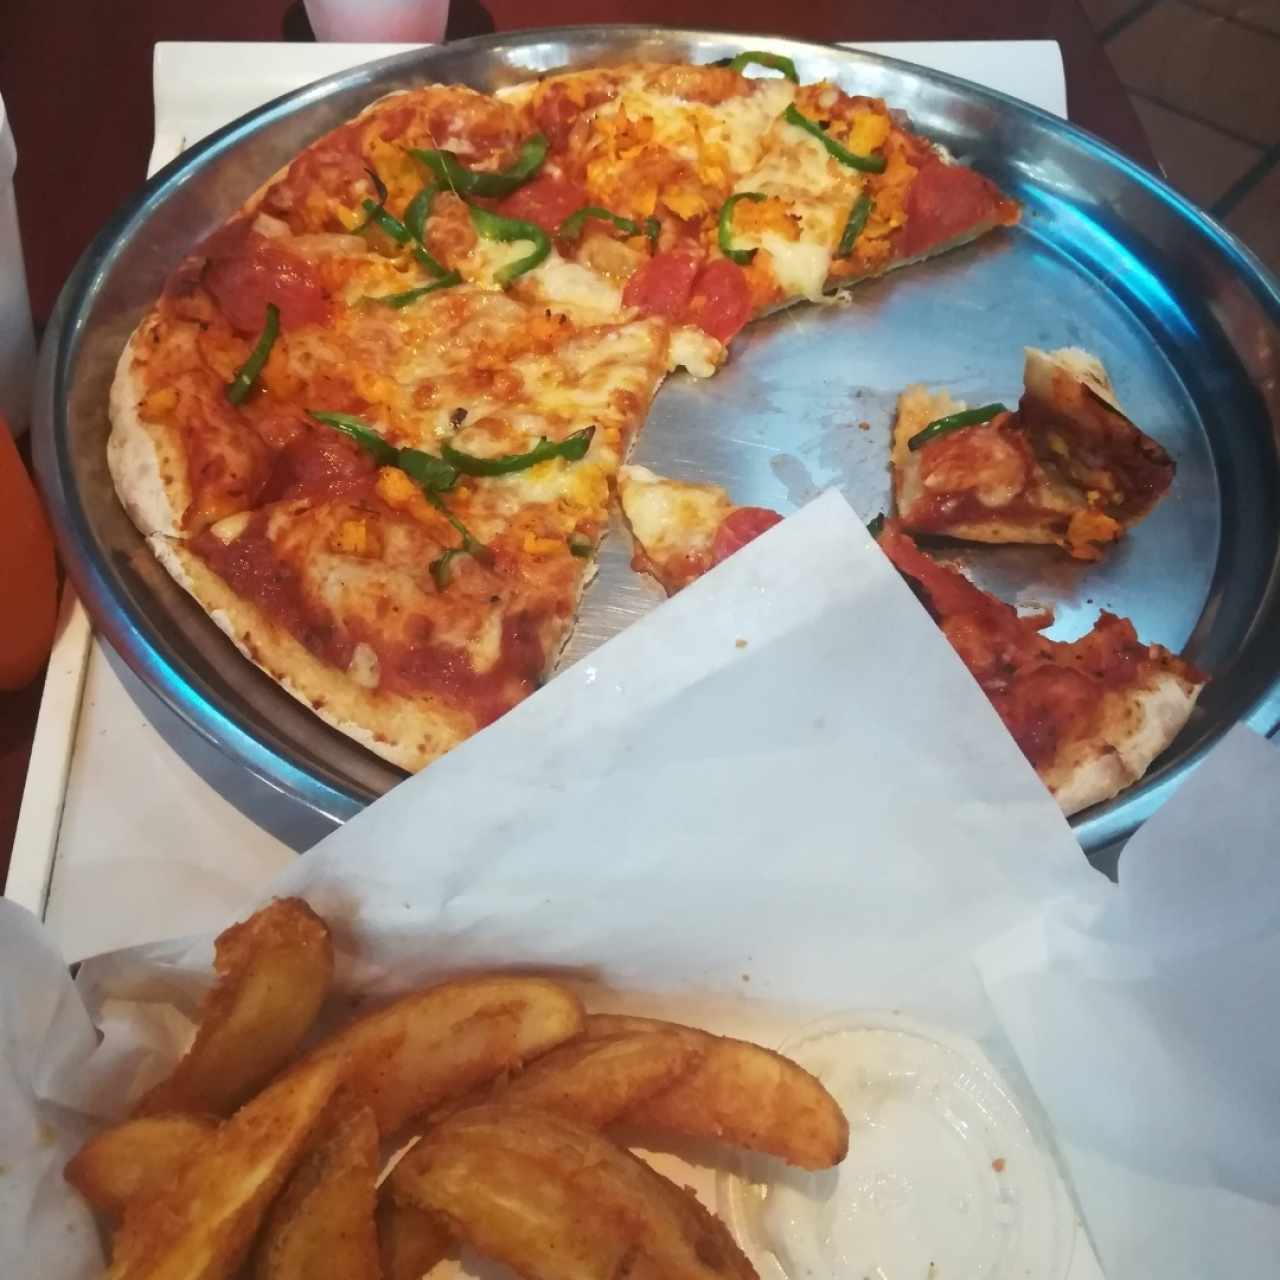 Pizza Pepperoni con pollo y vegetales